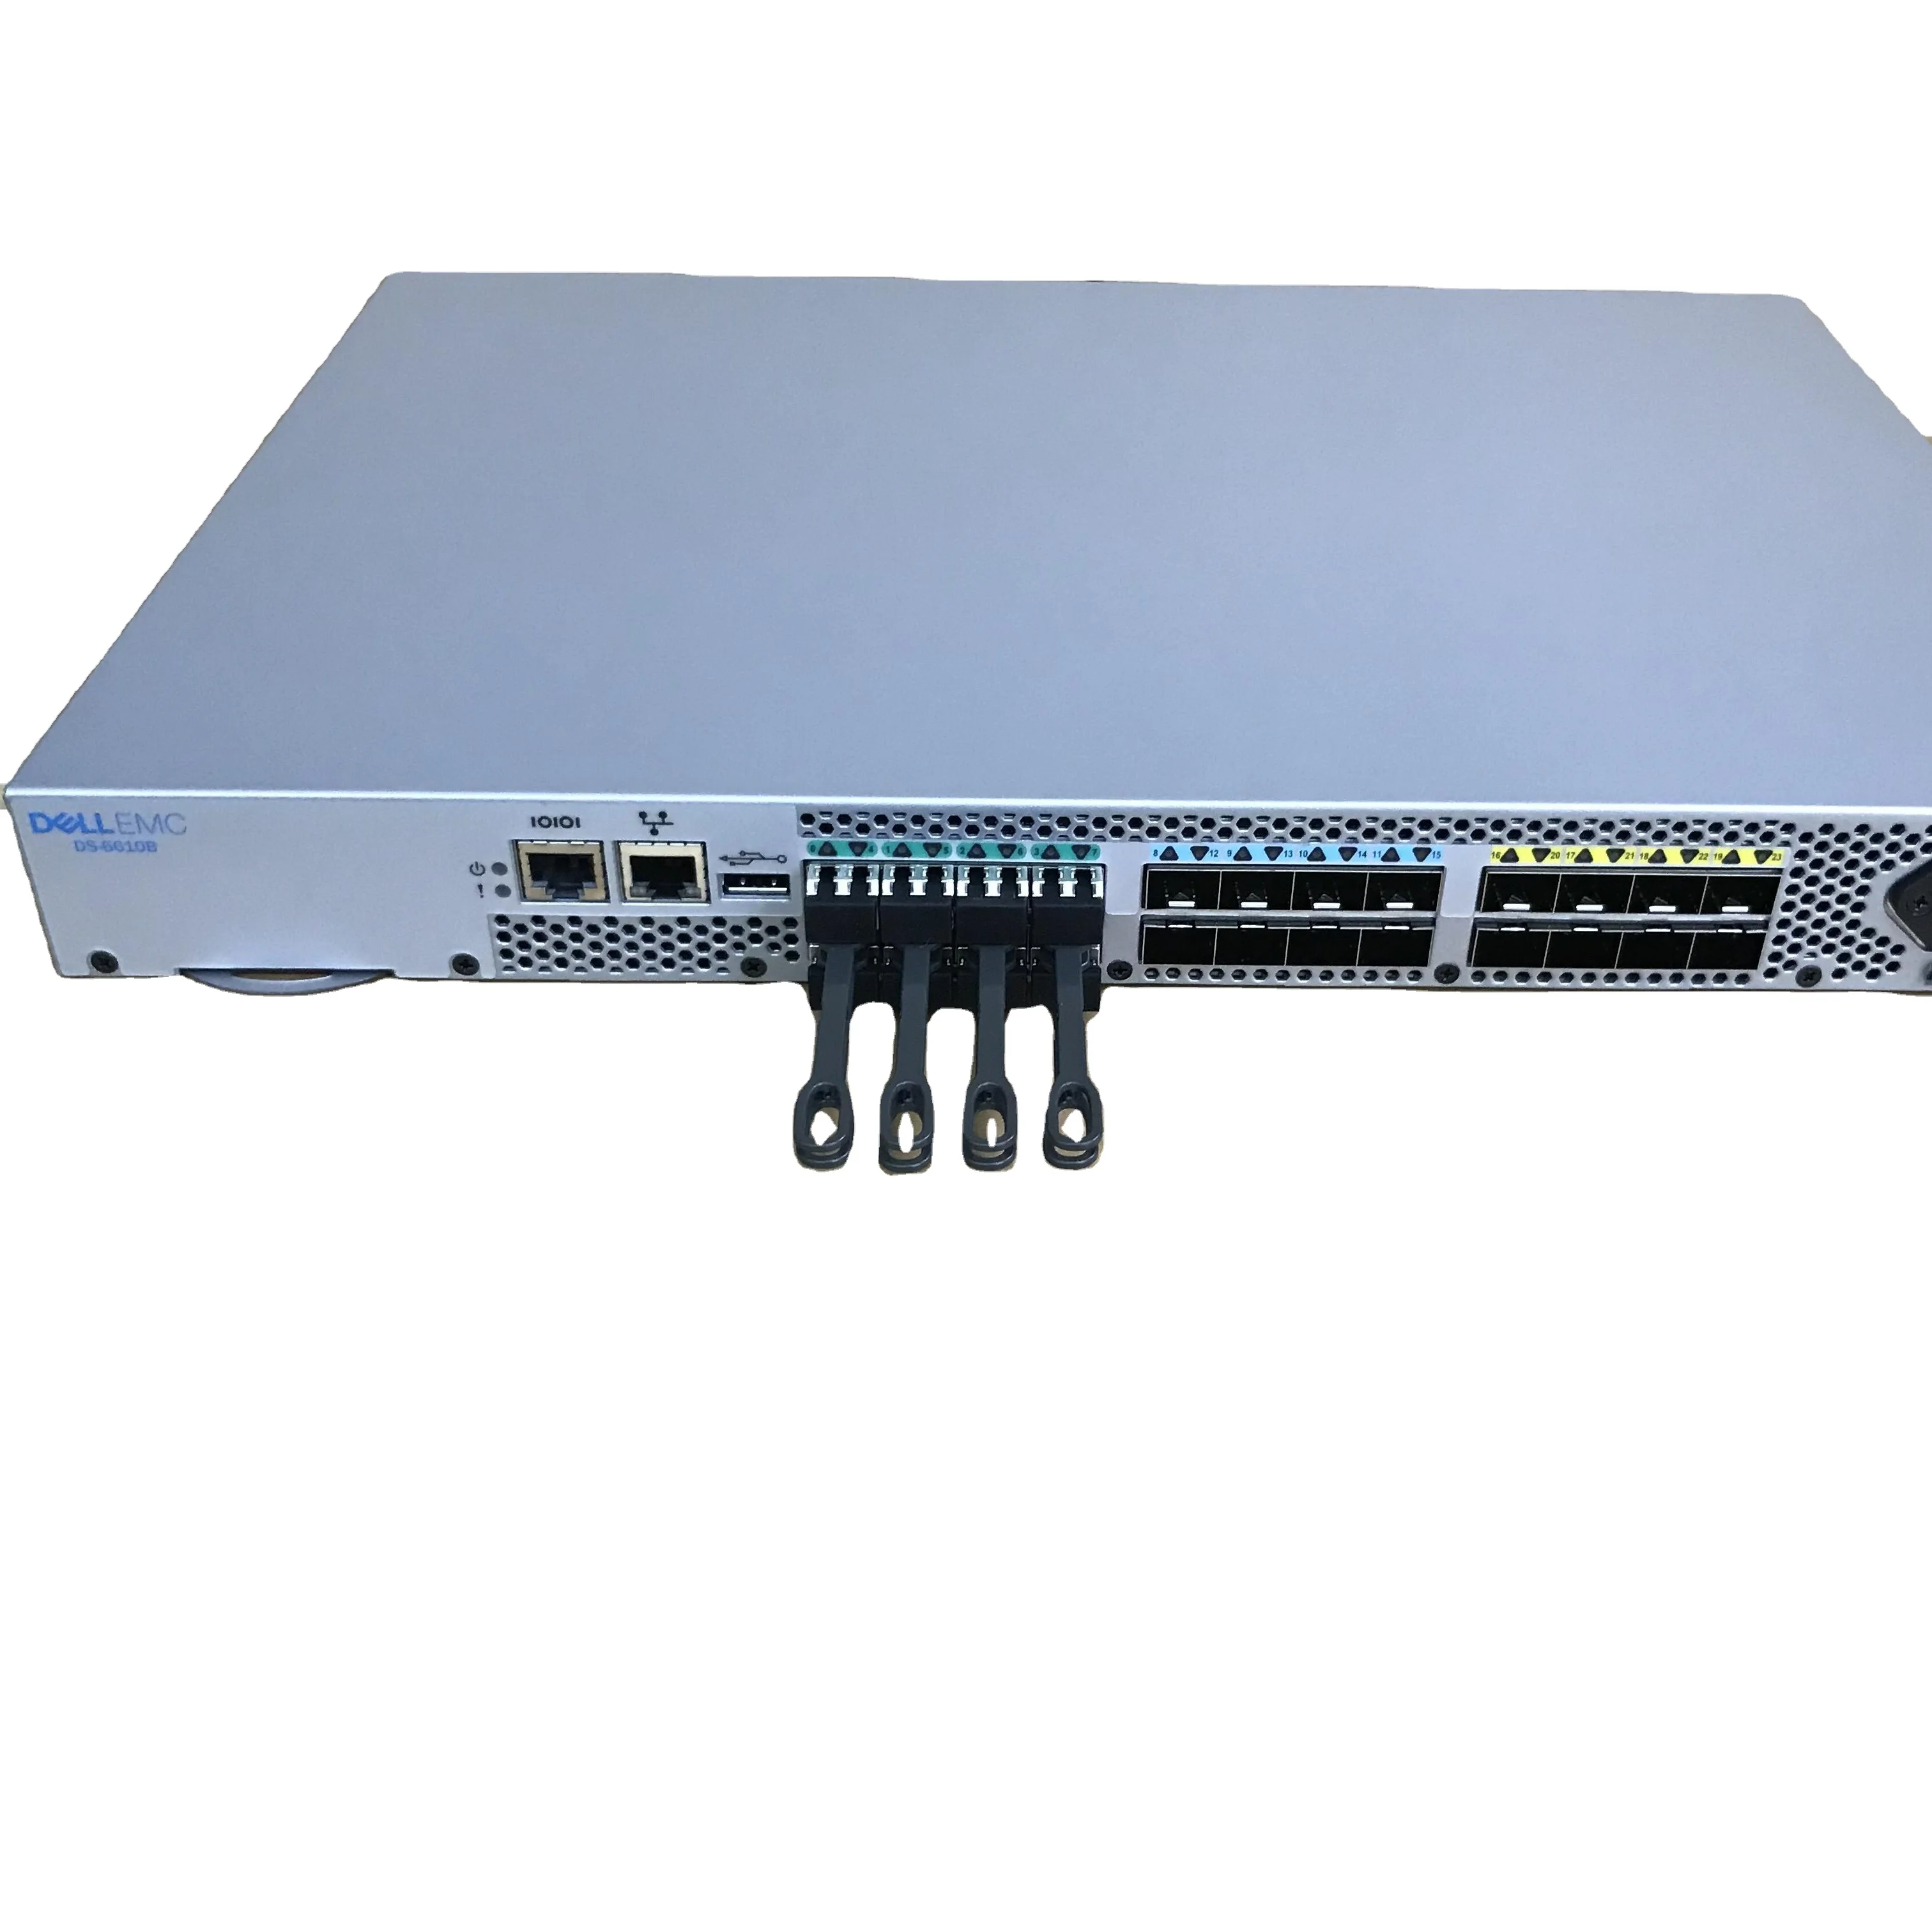 Dell EMC DS-6610 / Brocade G610 24-Port 32Gb Fibre Channel SAN Switch